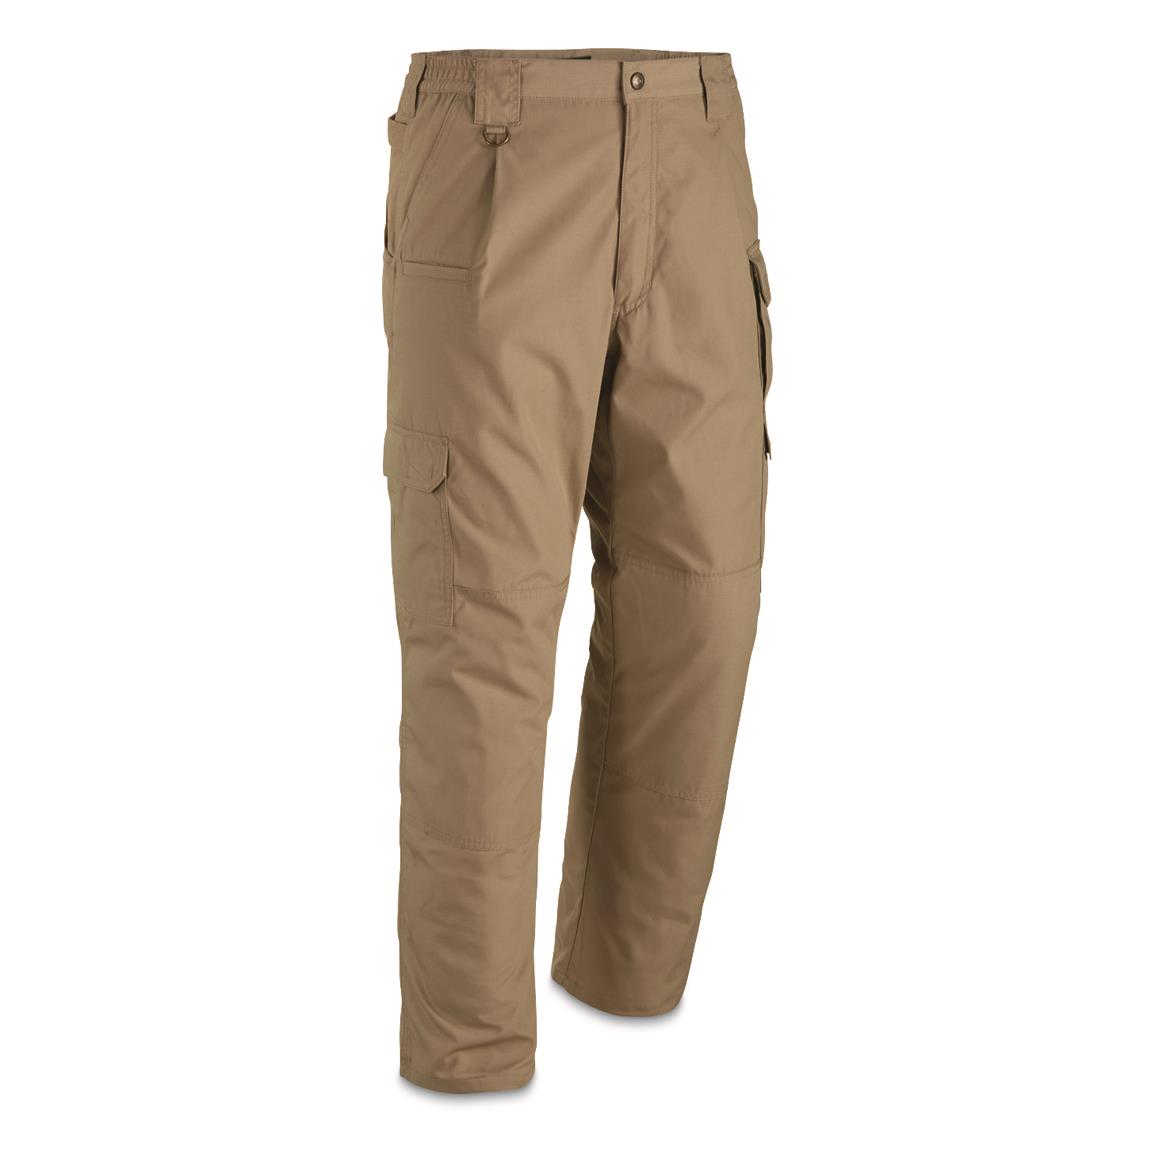 Huk Men's Gunwale Waterproof Pants - 714643, Jackets, Coats & Rain Gear at  Sportsman's Guide